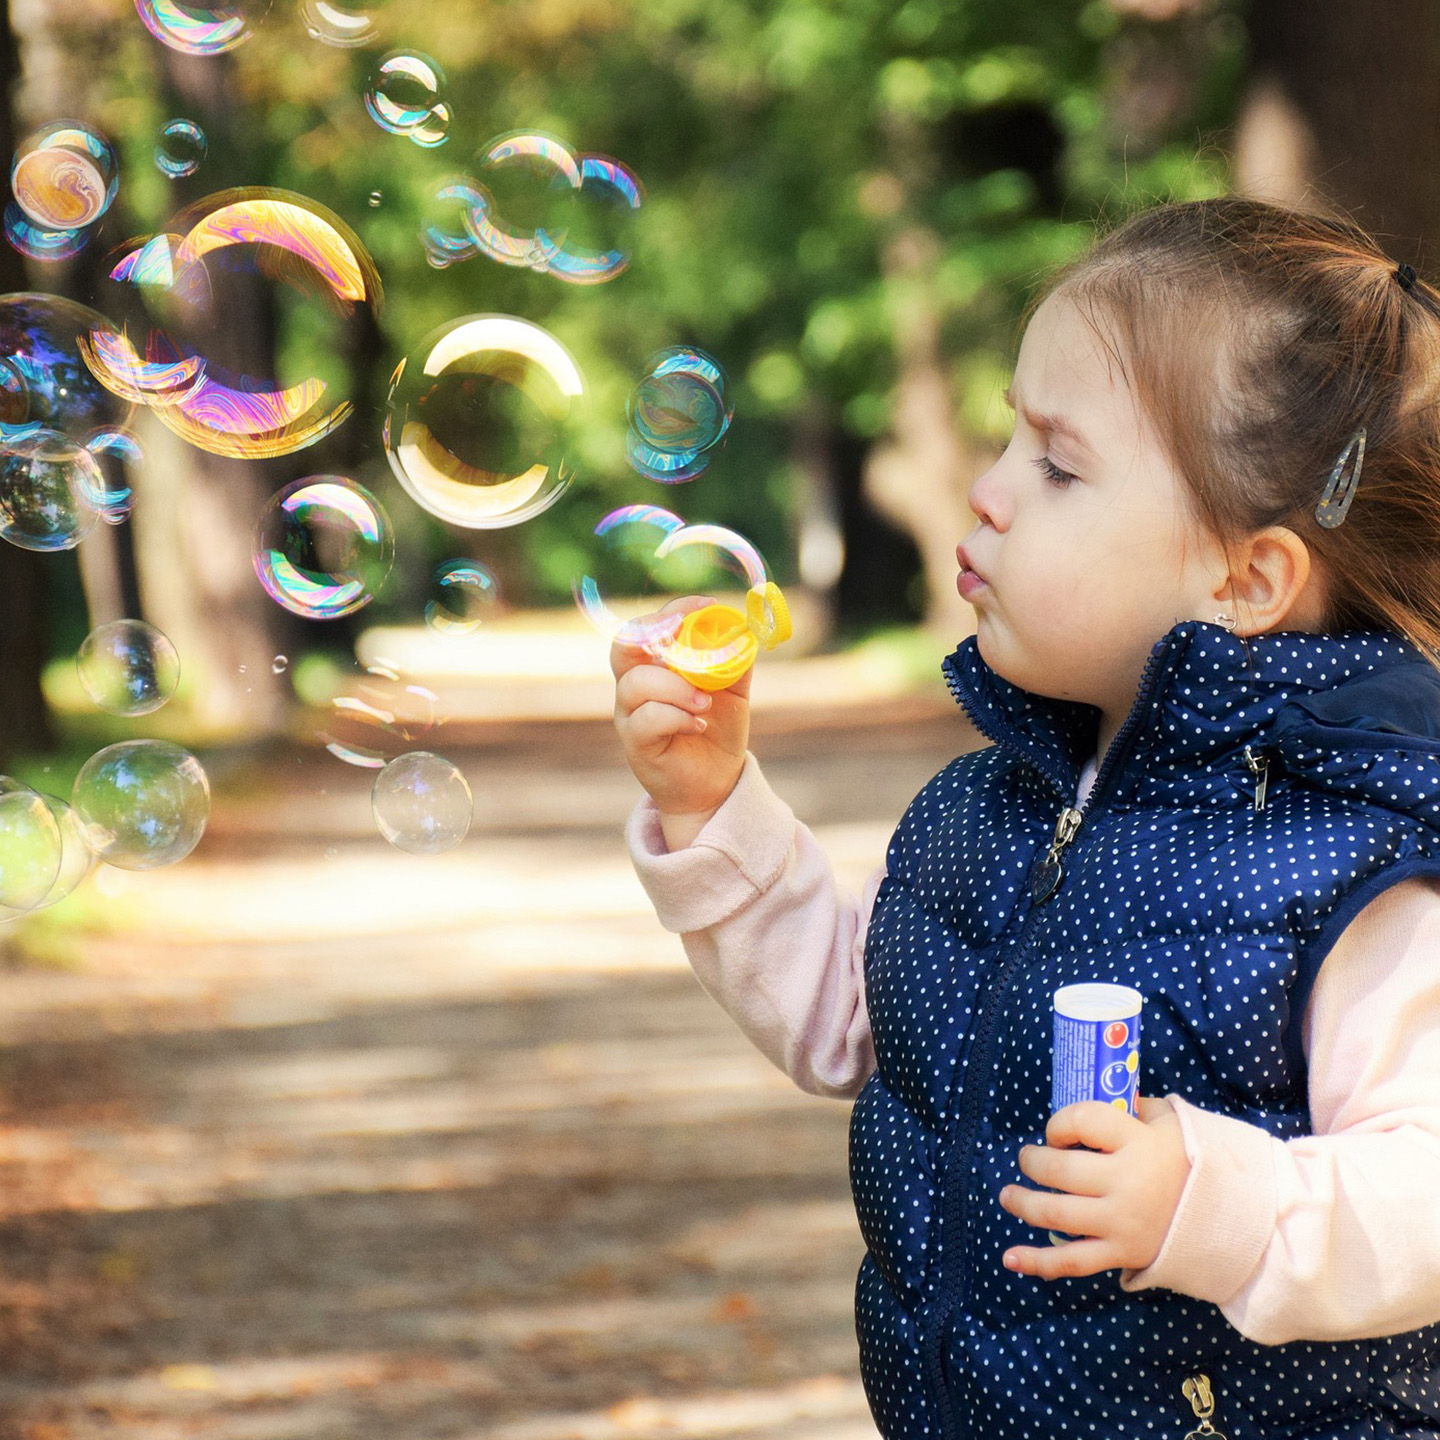 Foto: Kind im Park bläst Luftblasen